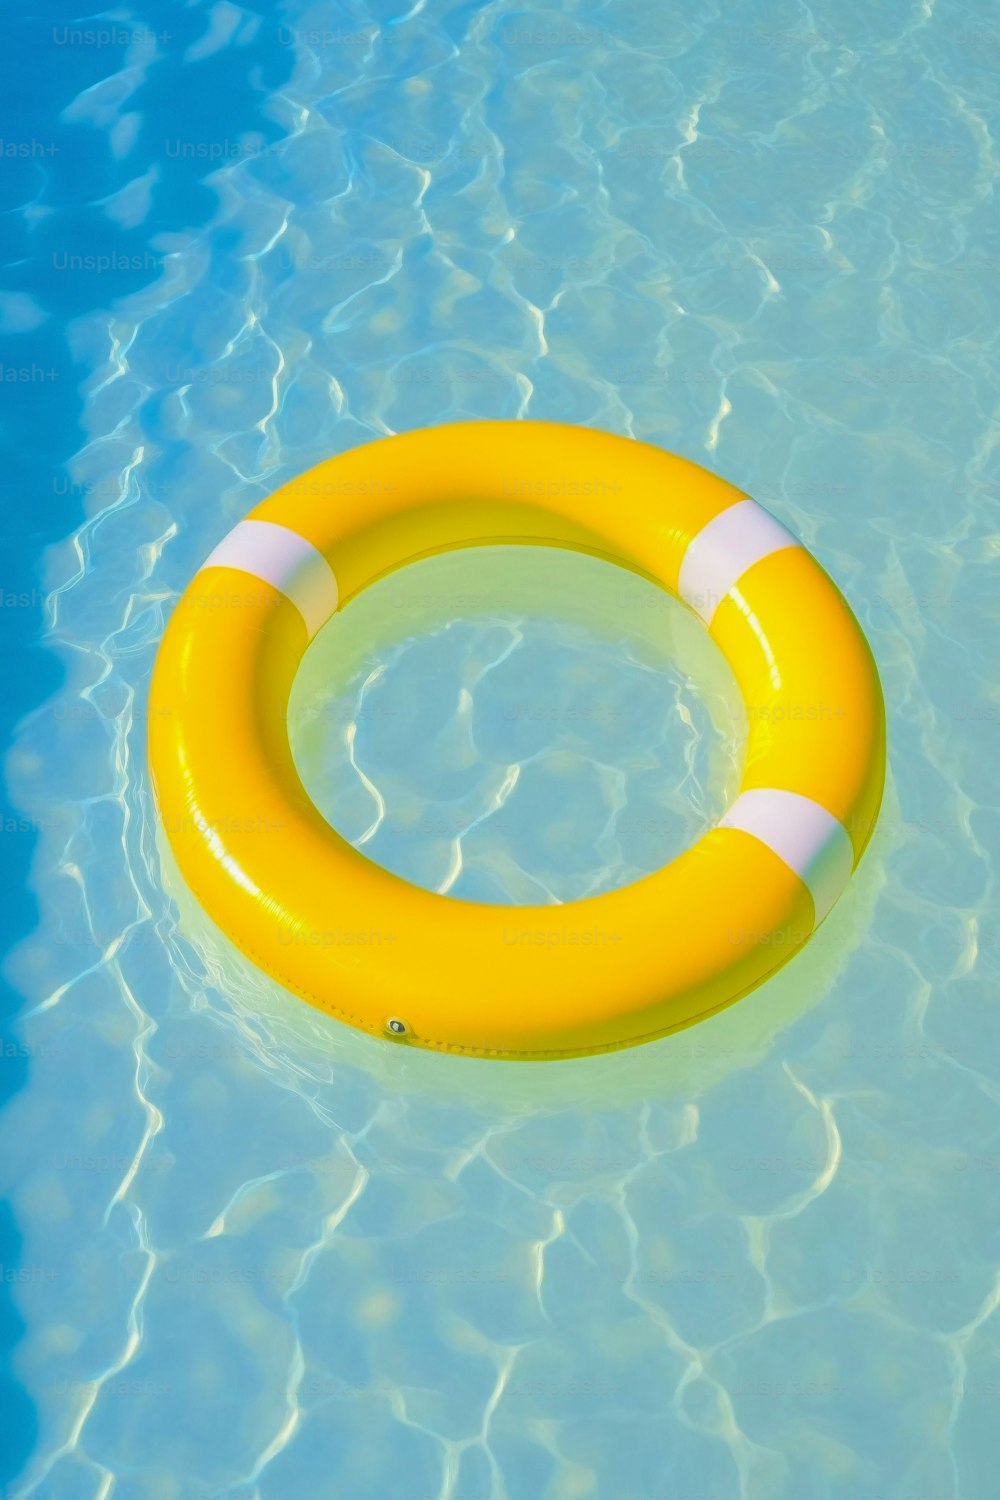 Un salvavidas flotando en un charco de agua